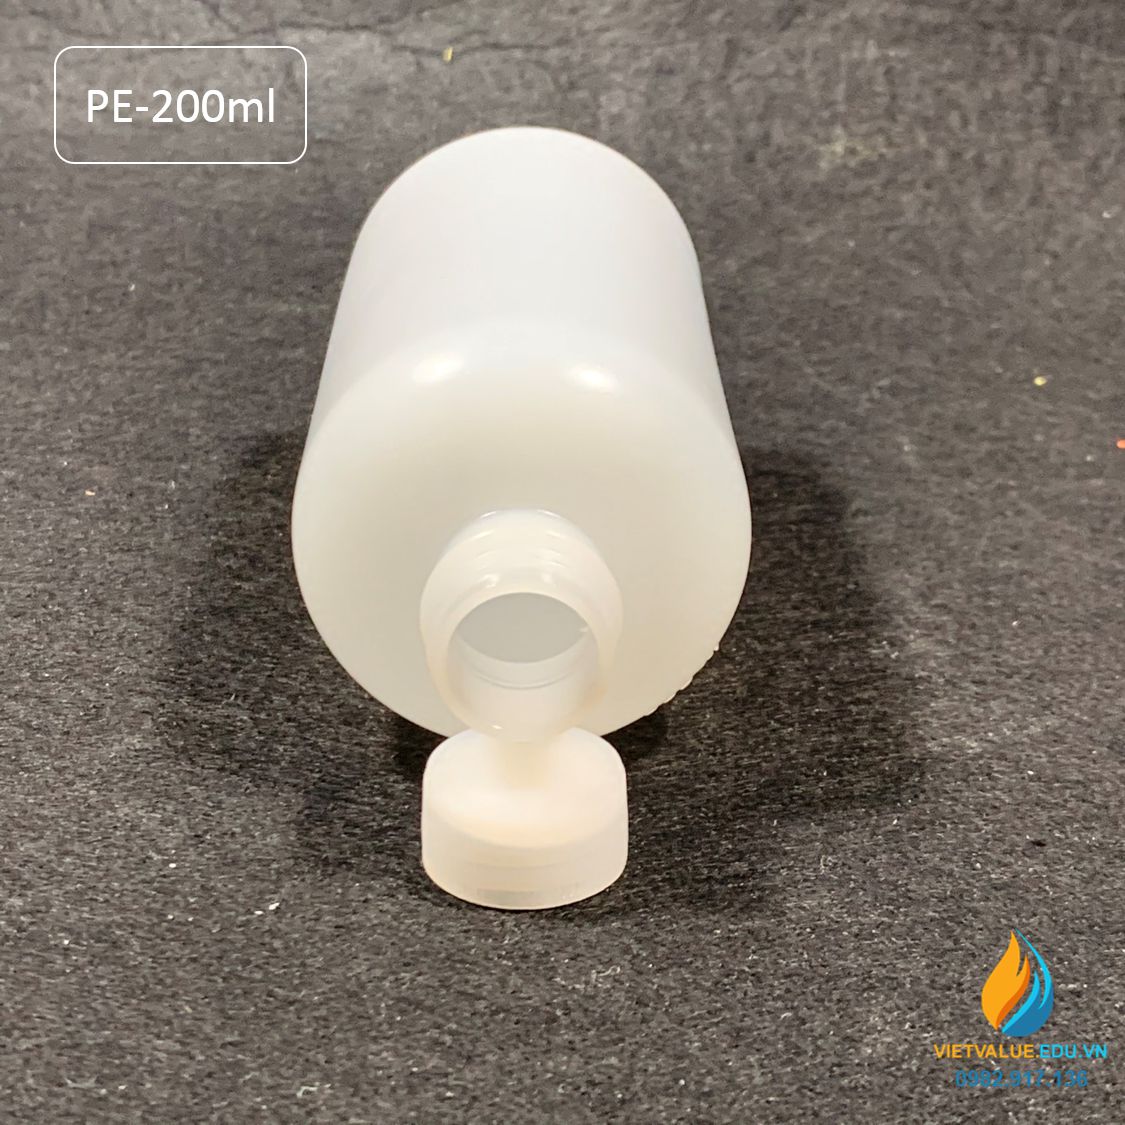 Chai nhựa PE dung tích 200ml, chai nhựa lưu mẫu chất, miệng rộng, vạch chia